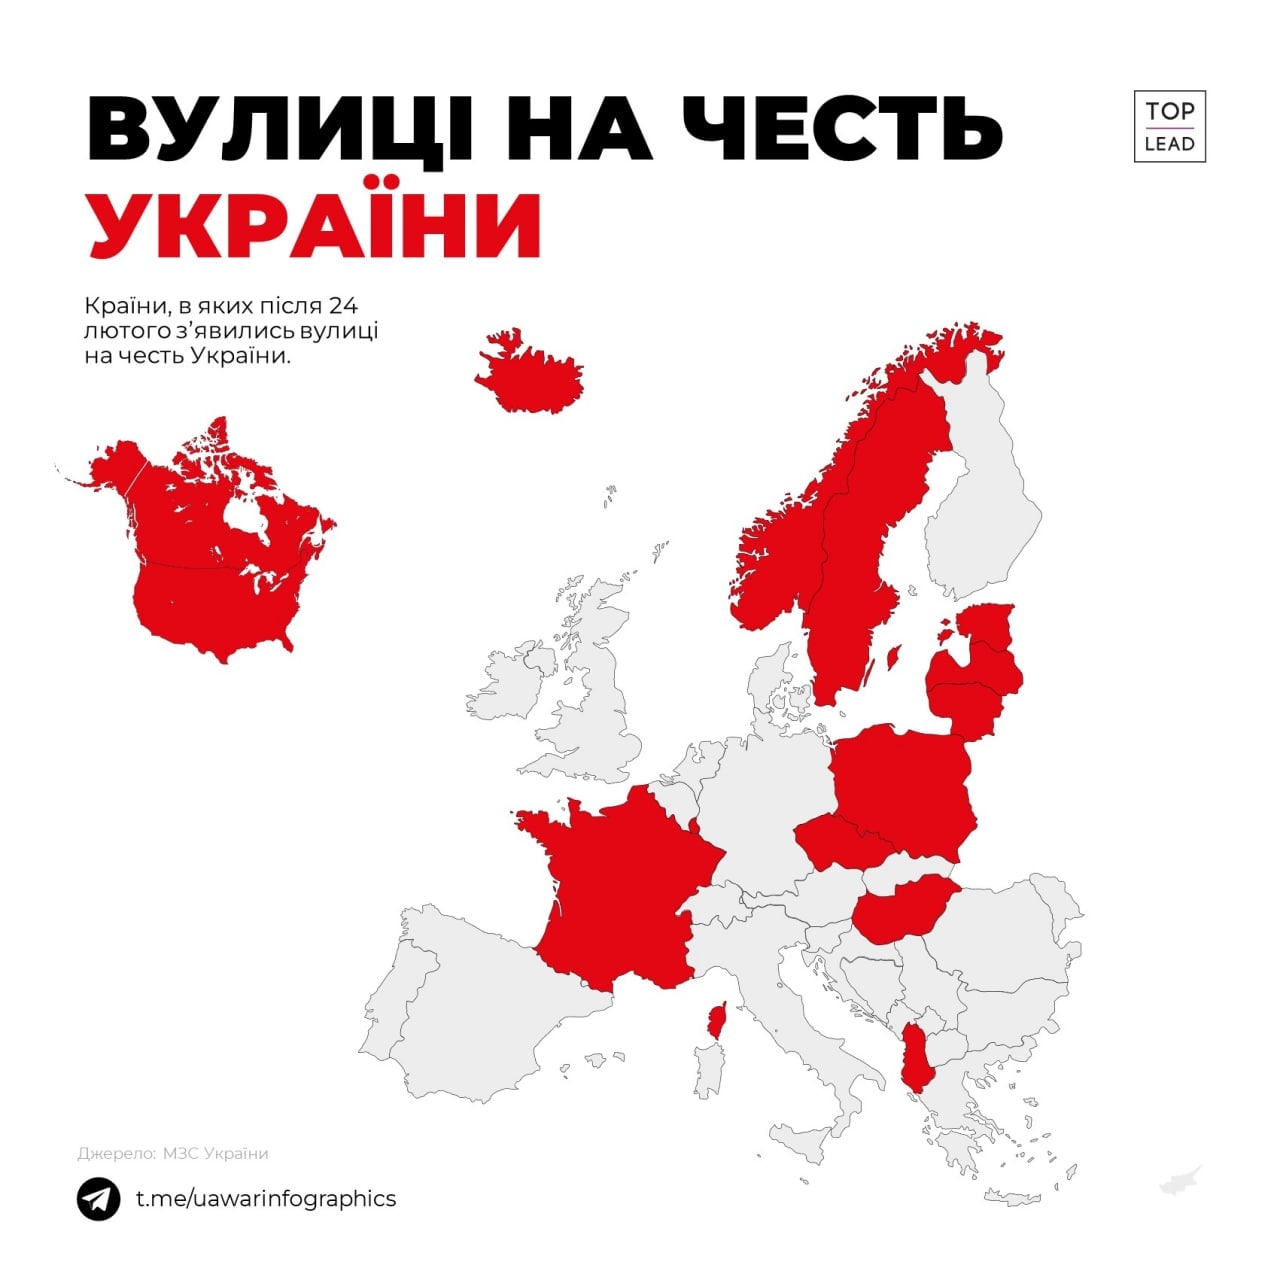 Інфографіка: Вже 14 країн назвали вулиці на честь України